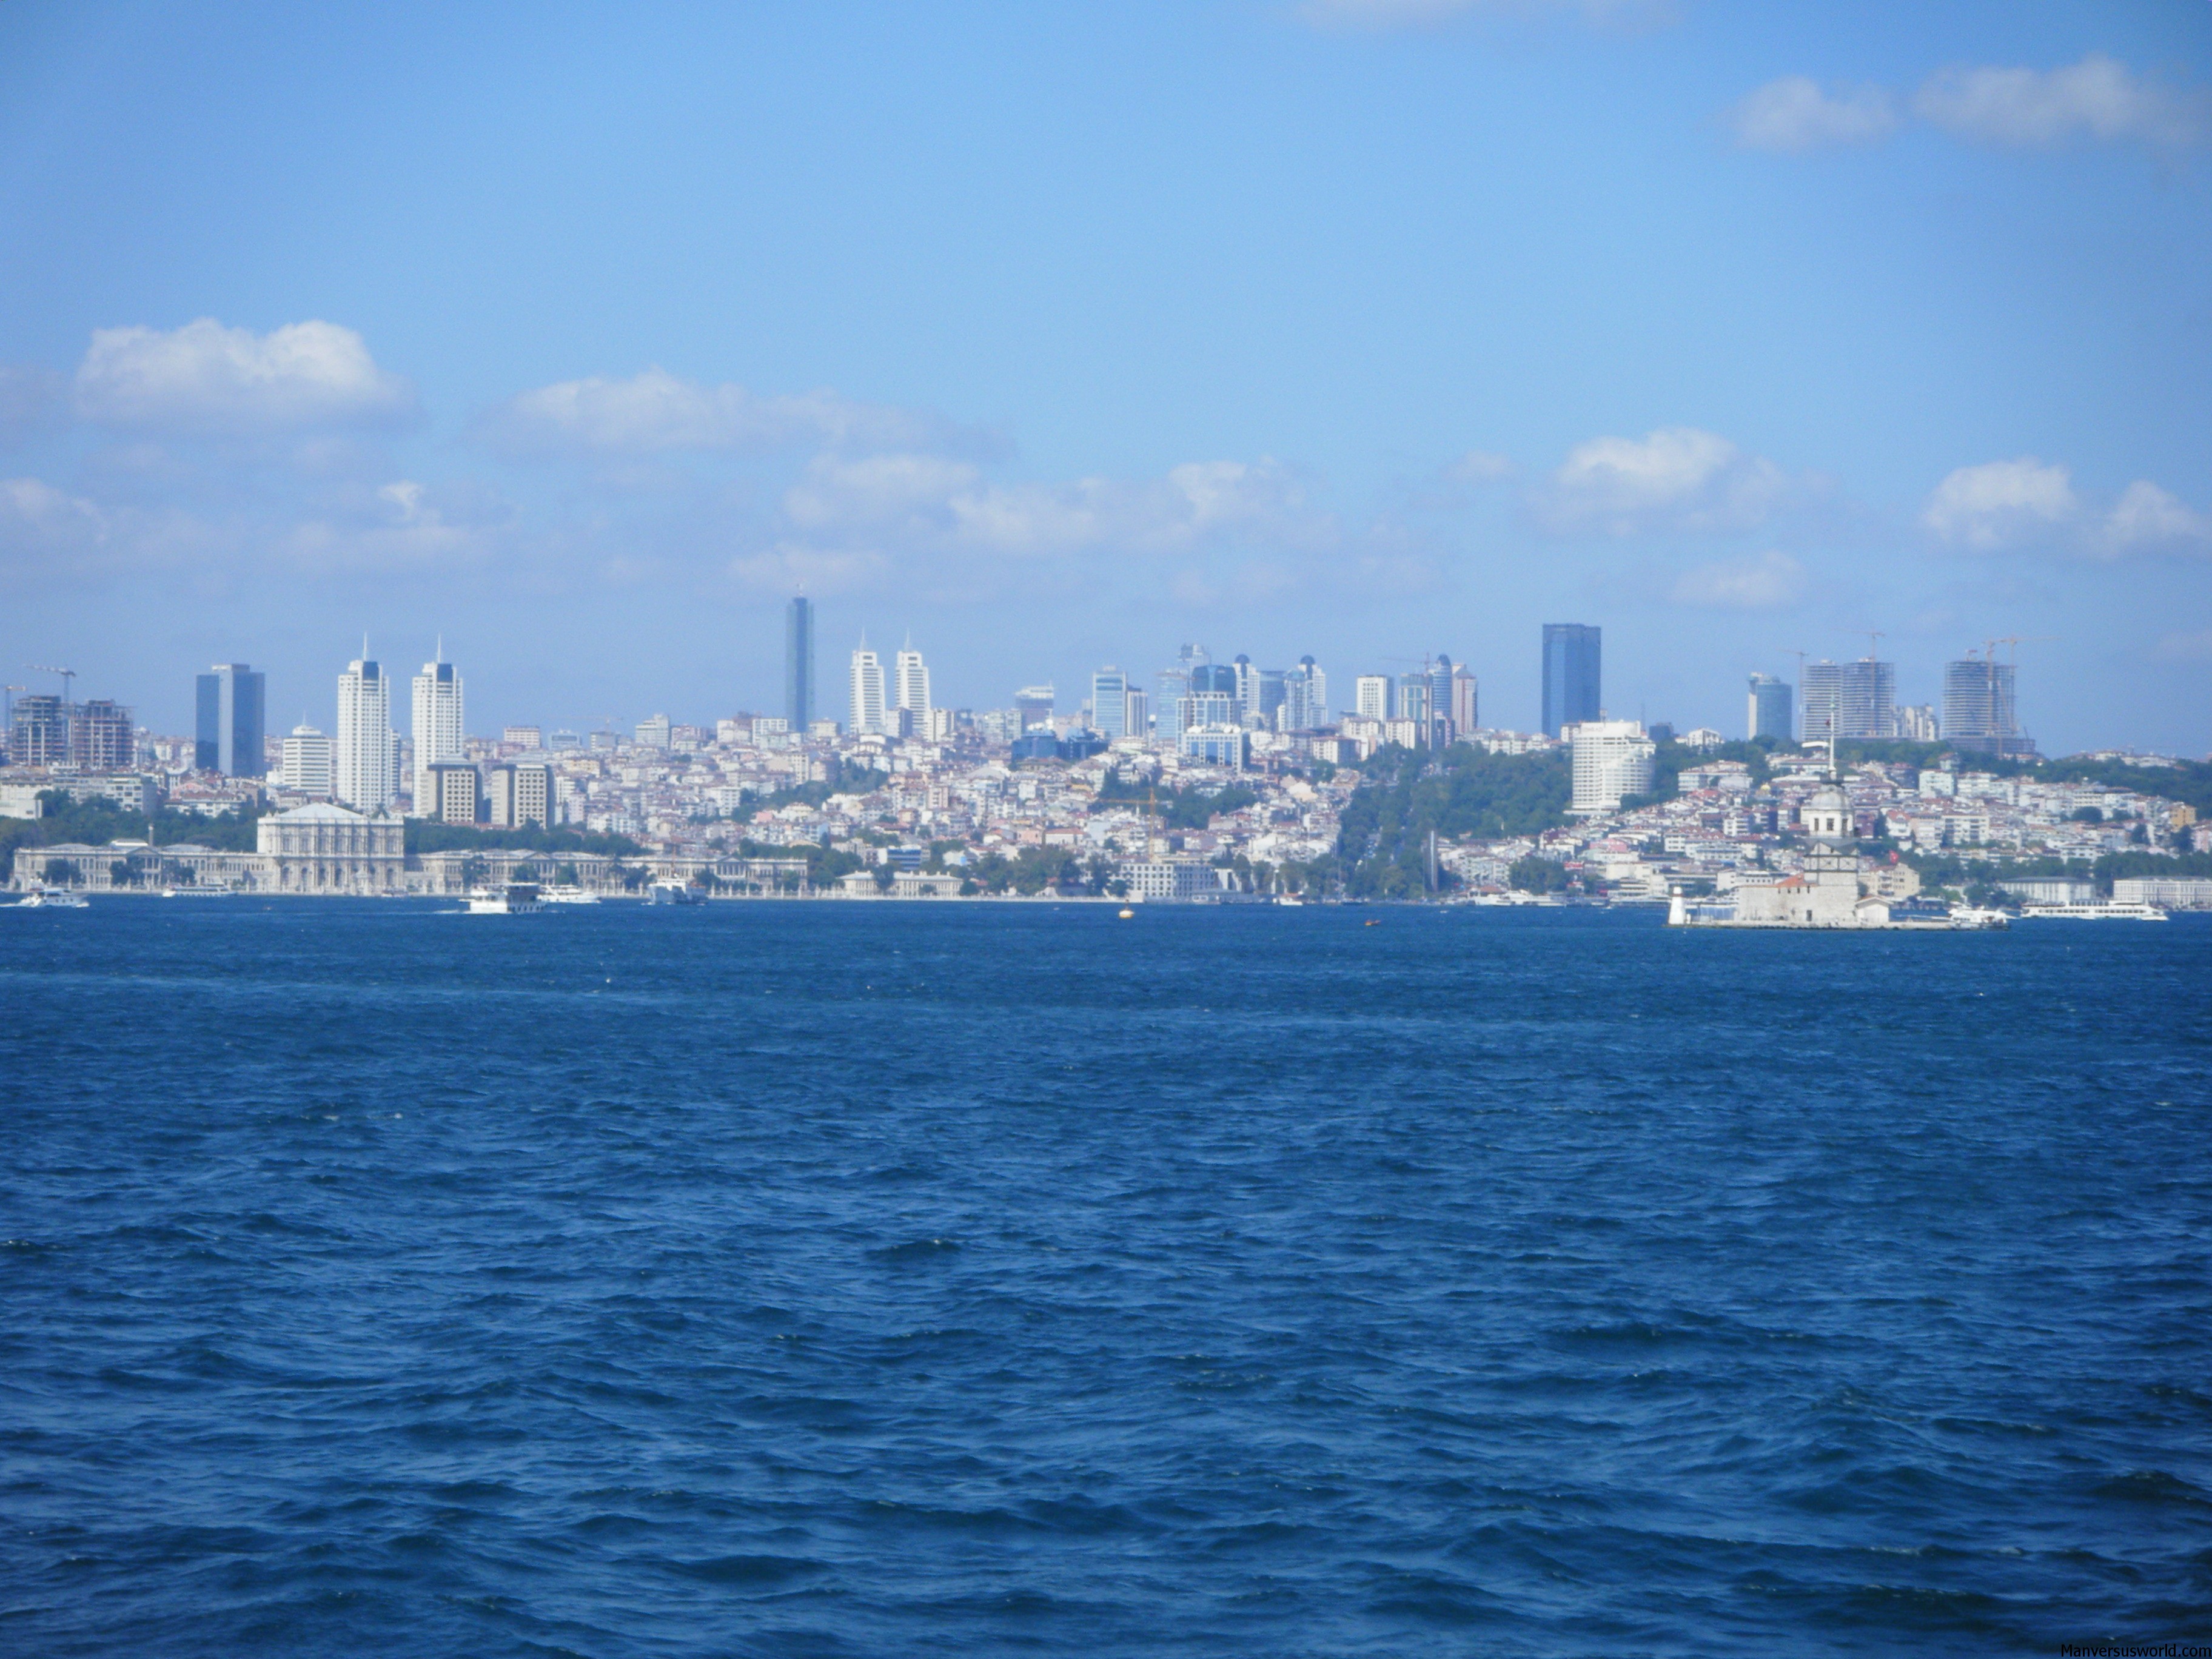 The Istanbul skyline